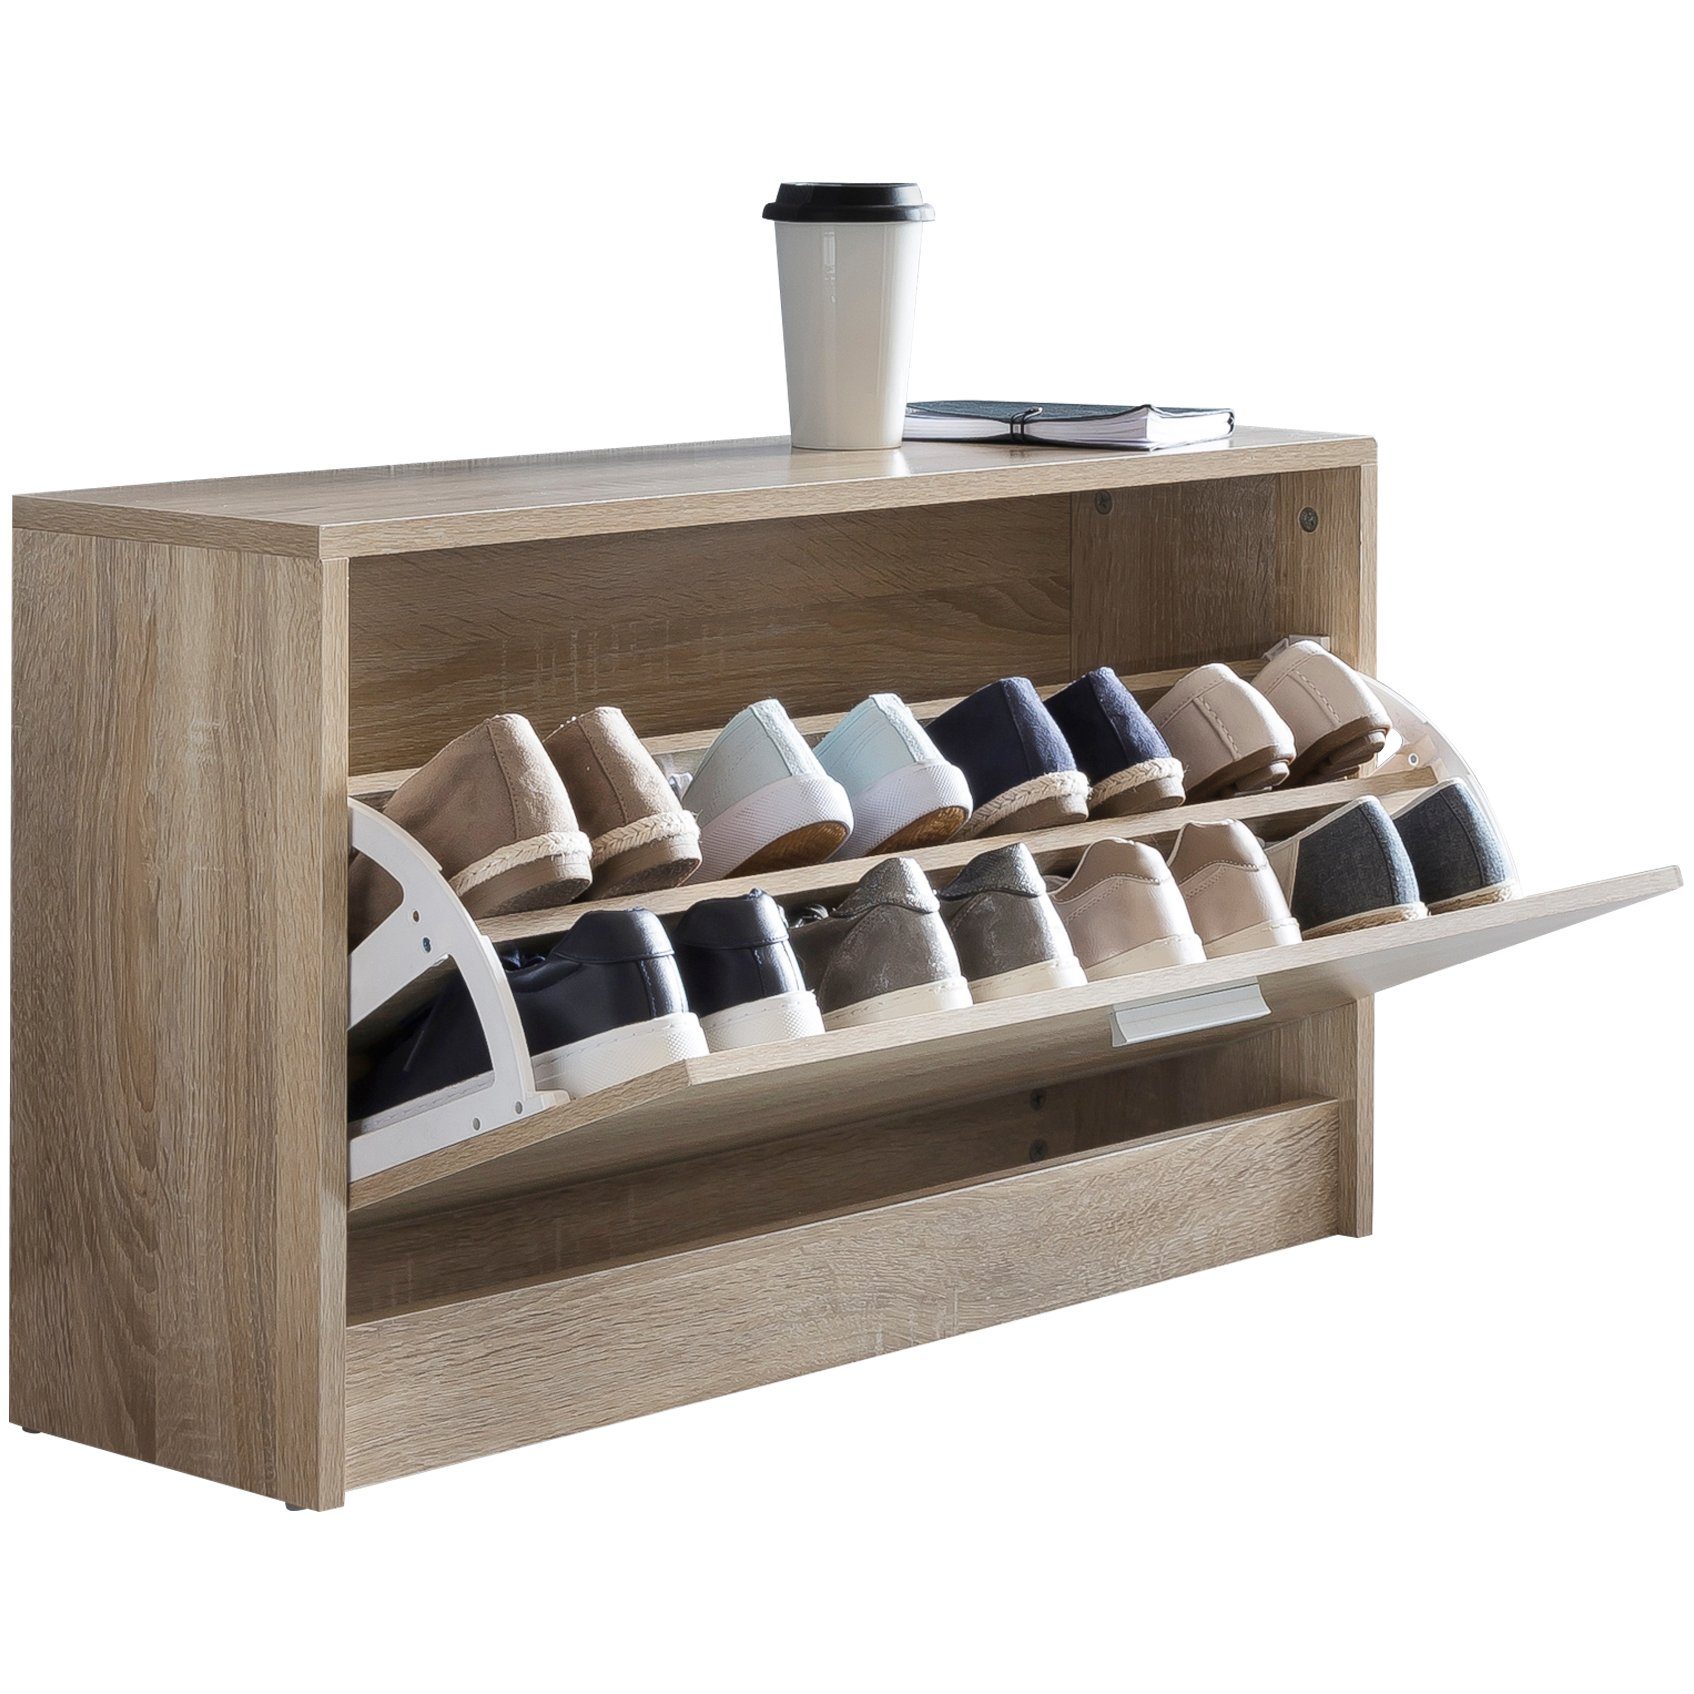 KADIMA DESIGN Schuhschrank Holz Schuhkipper Bank mit Ablagefach & 2  Unterfächern